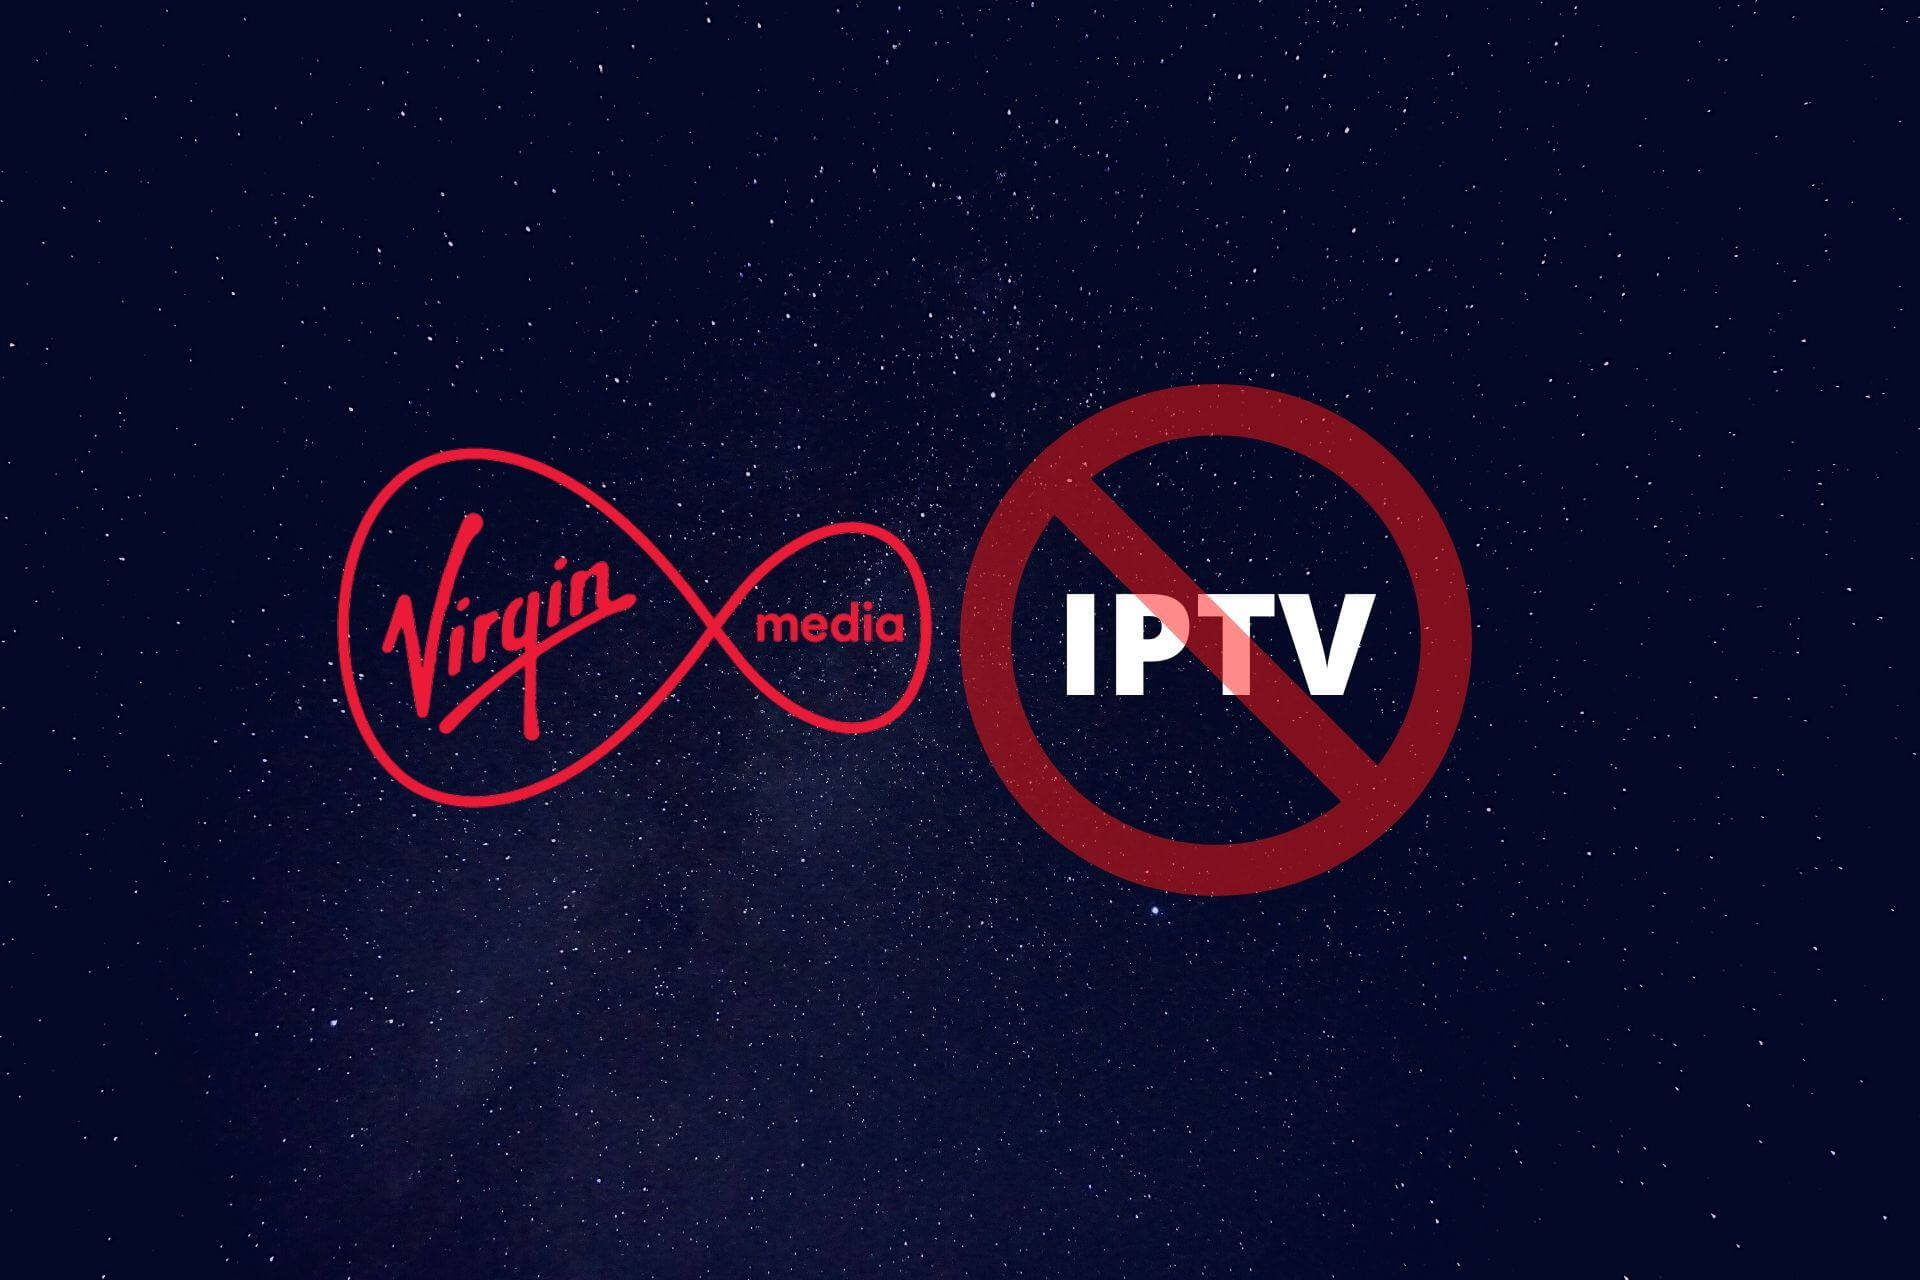 IPTV blocked by Virgin Media